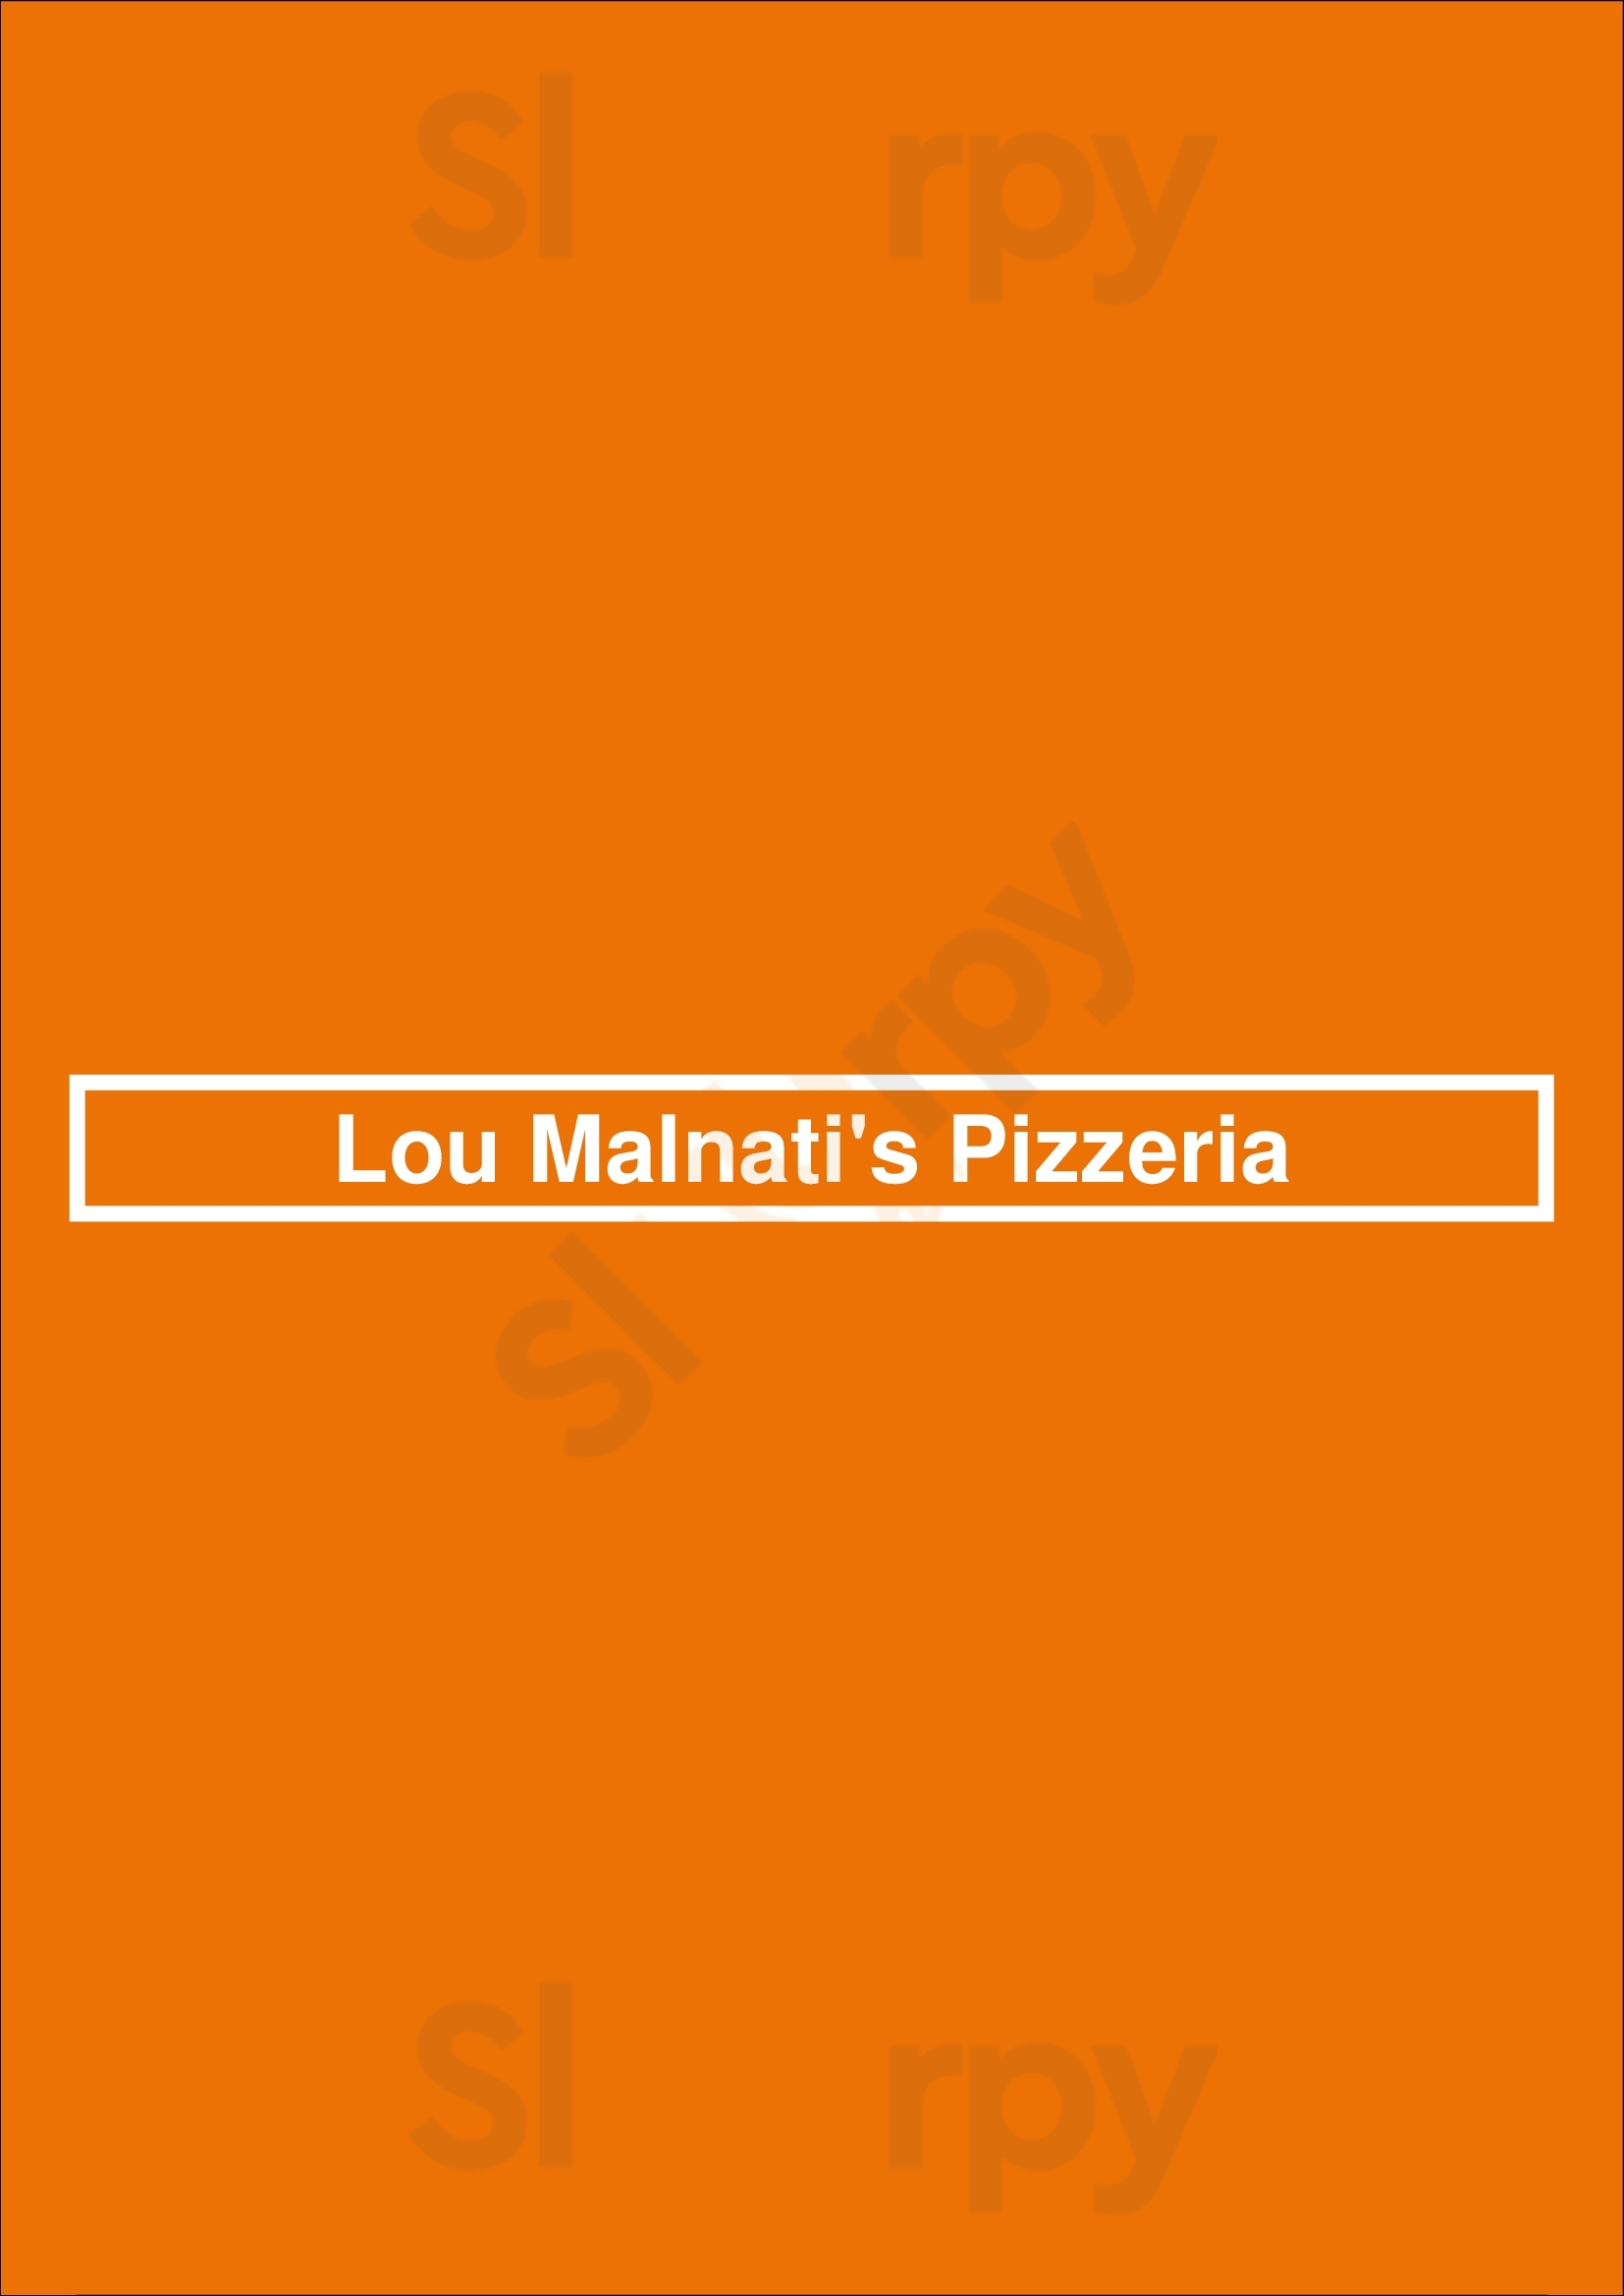 Lou Malnati's Pizzeria Scottsdale Menu - 1